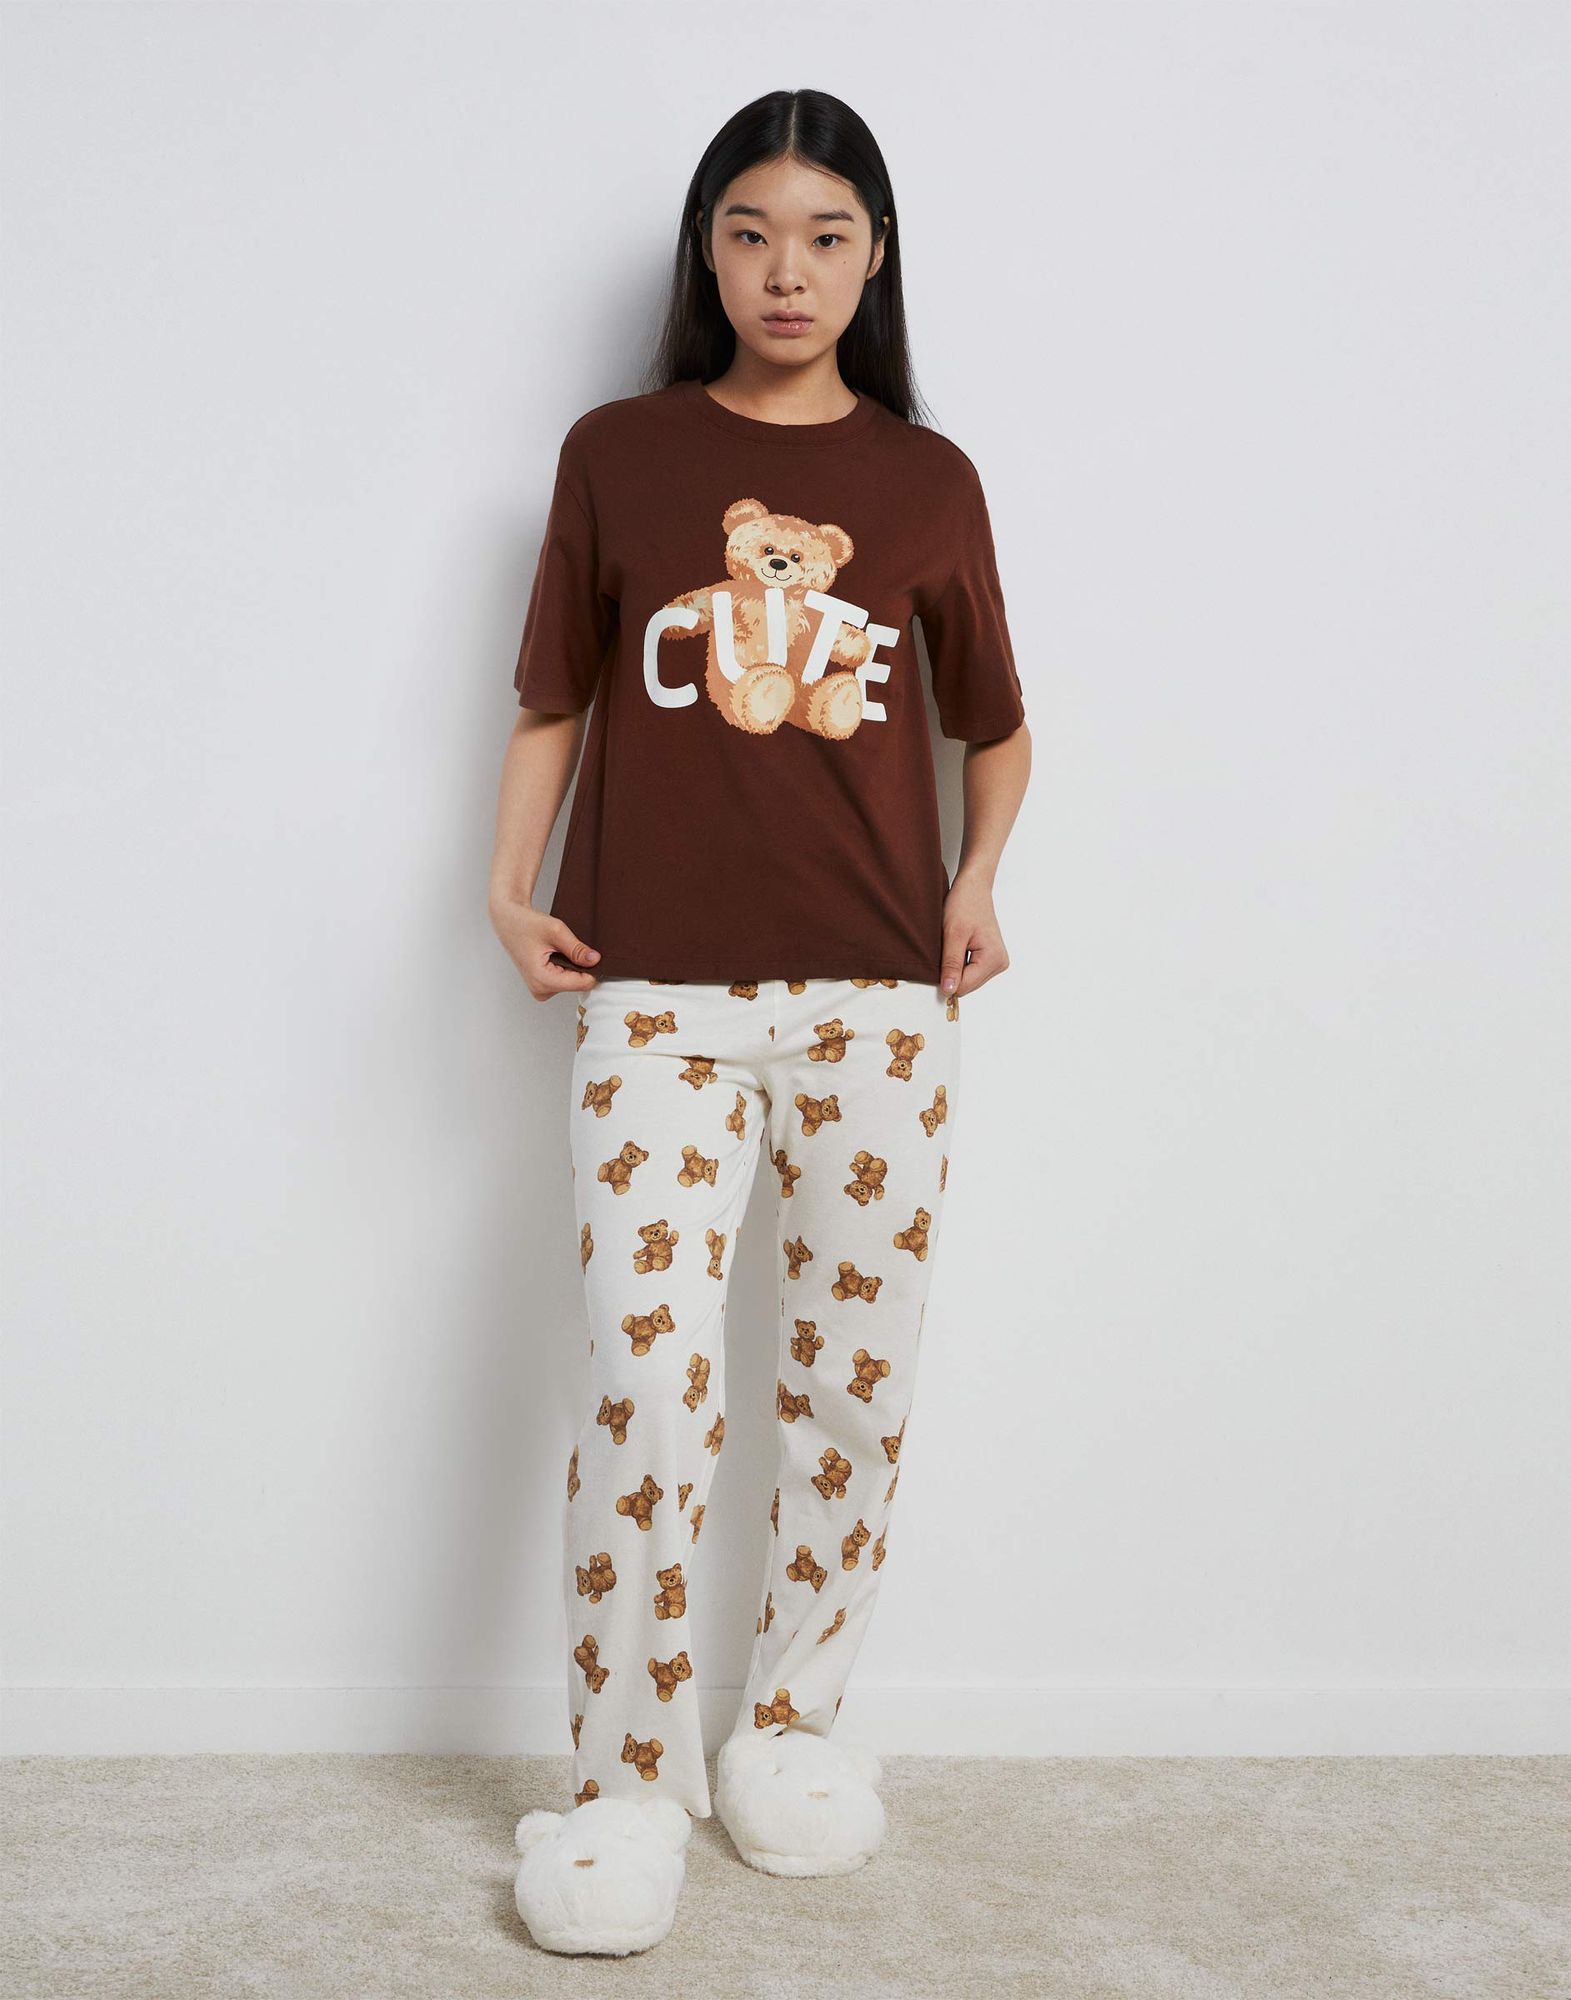 Пижама с медвежатами для девочки-0